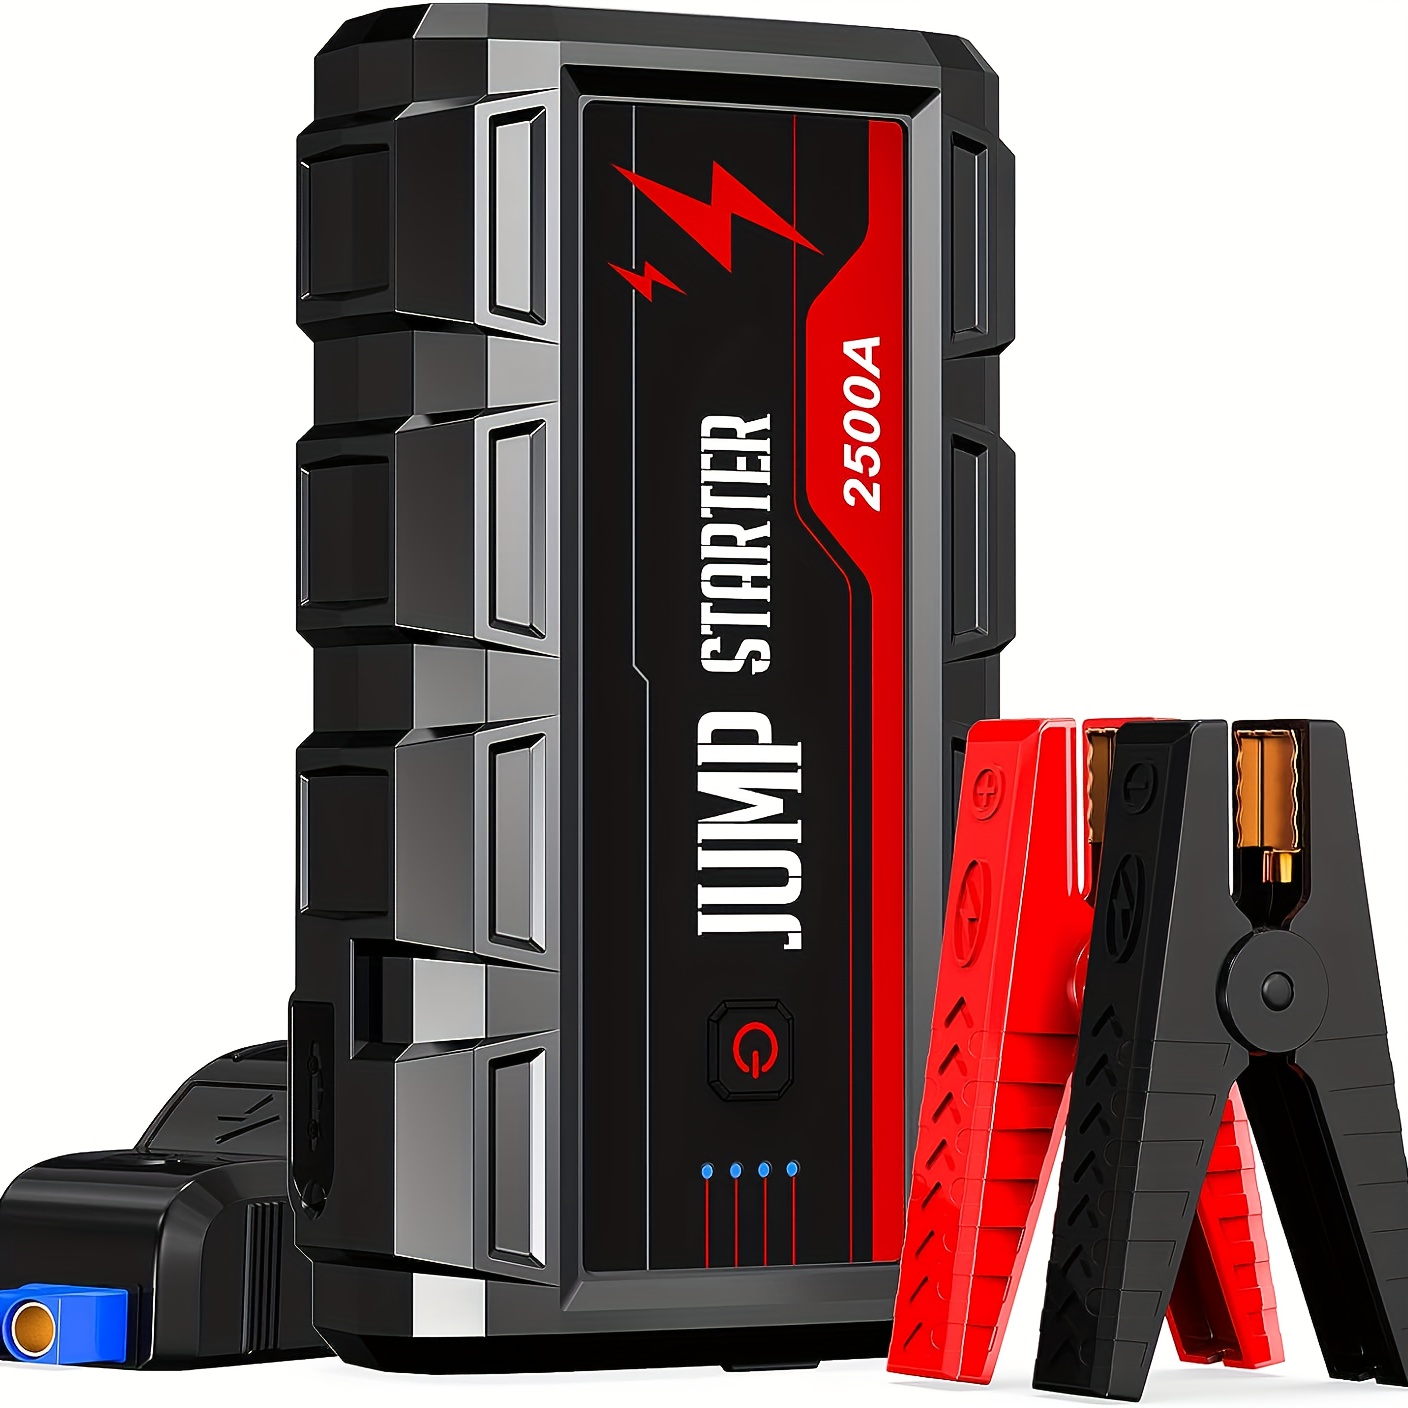 Booster De Bateria Jump Starter - Temu Chile